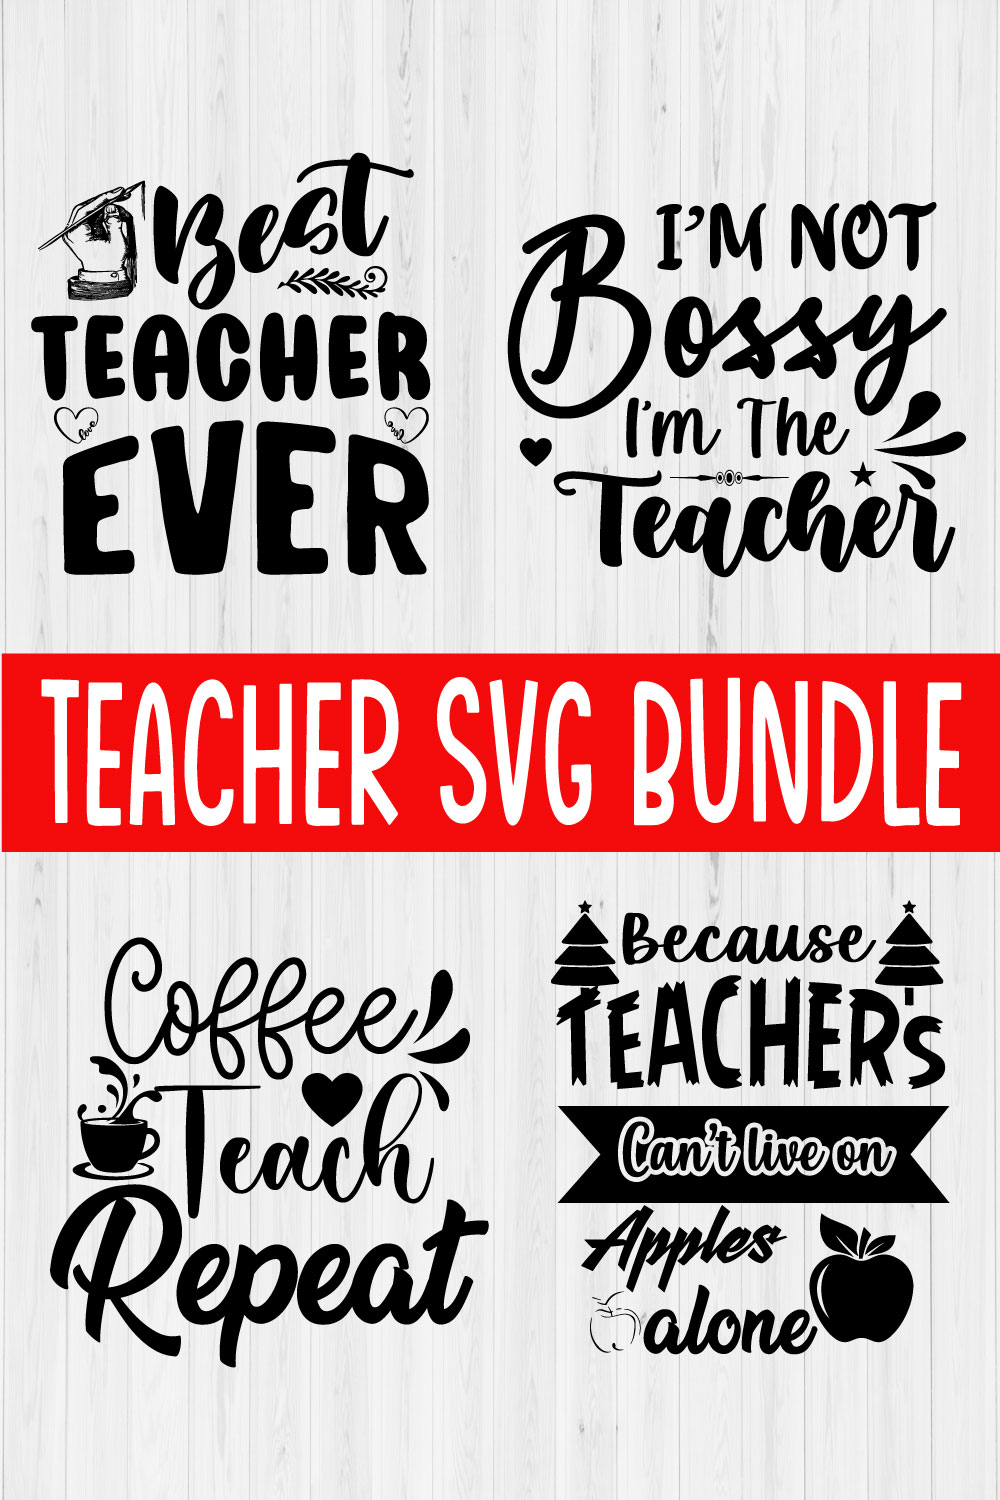 Teacher Svg Design Bundle Vol2 pinterest preview image.